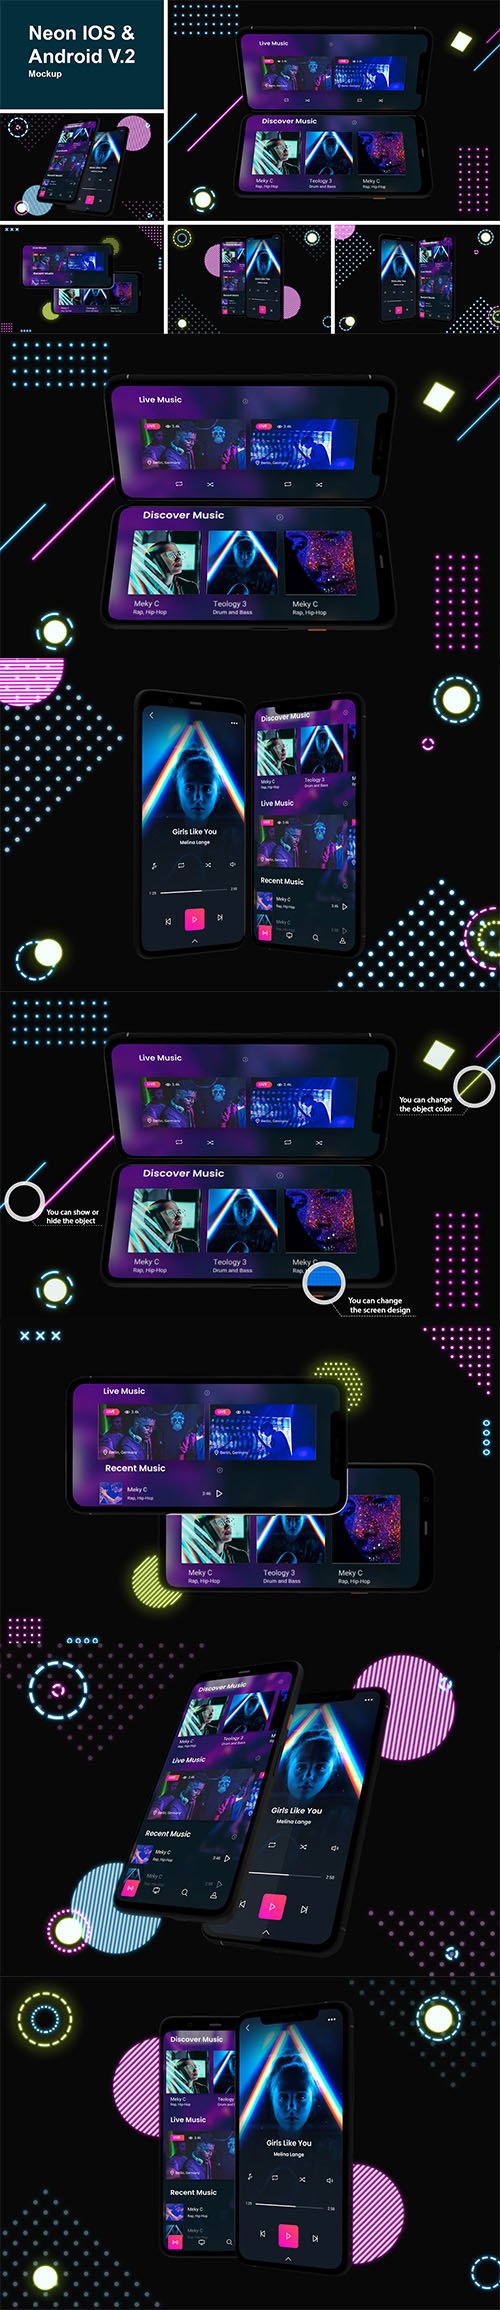 Neon IOS & Android Mockup V.2